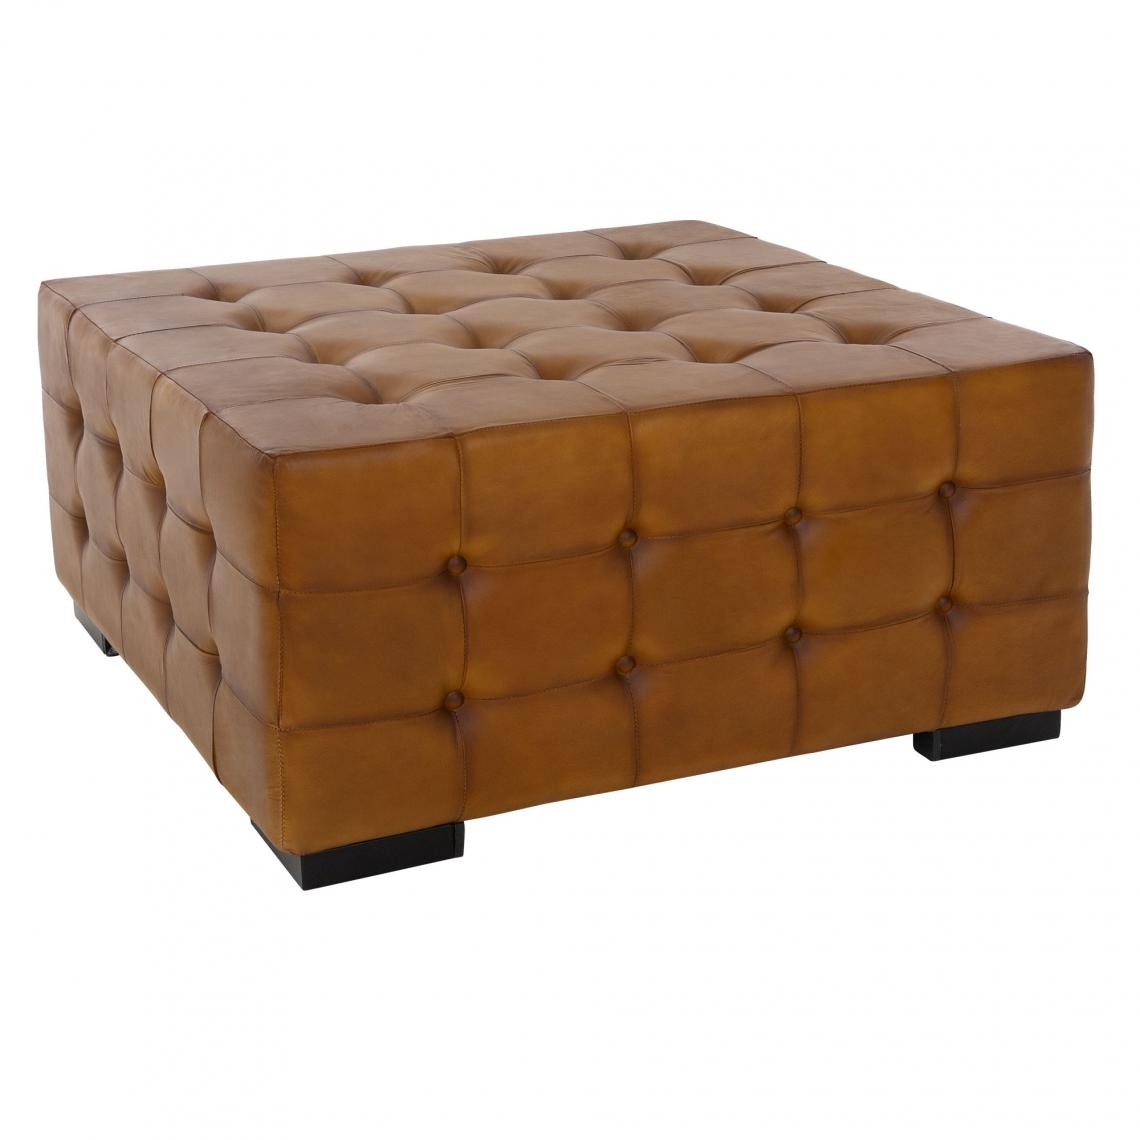 Womo-design - Tabouret pouf XXL Brünn en cuir marron avec pieds pour table basse salon chambre - Tabourets